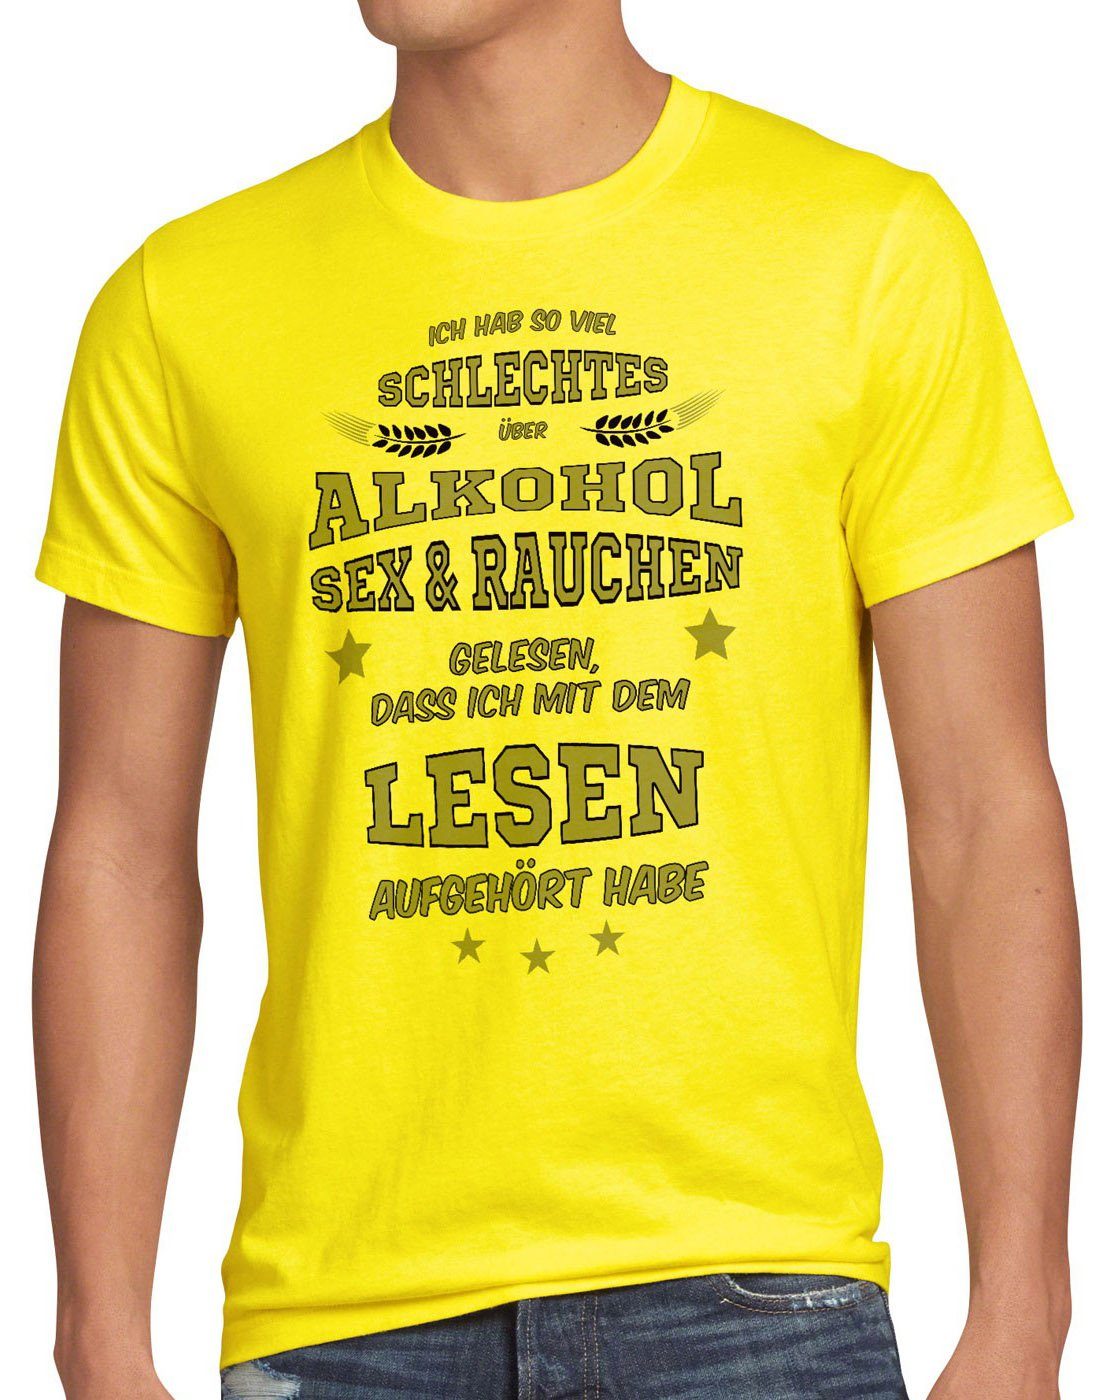 style3 Spruch Funshirt Print-Shirt Viel Rauchen gelb Sex T-Shirt gelesen Herren schlechtes Fun Alkohol